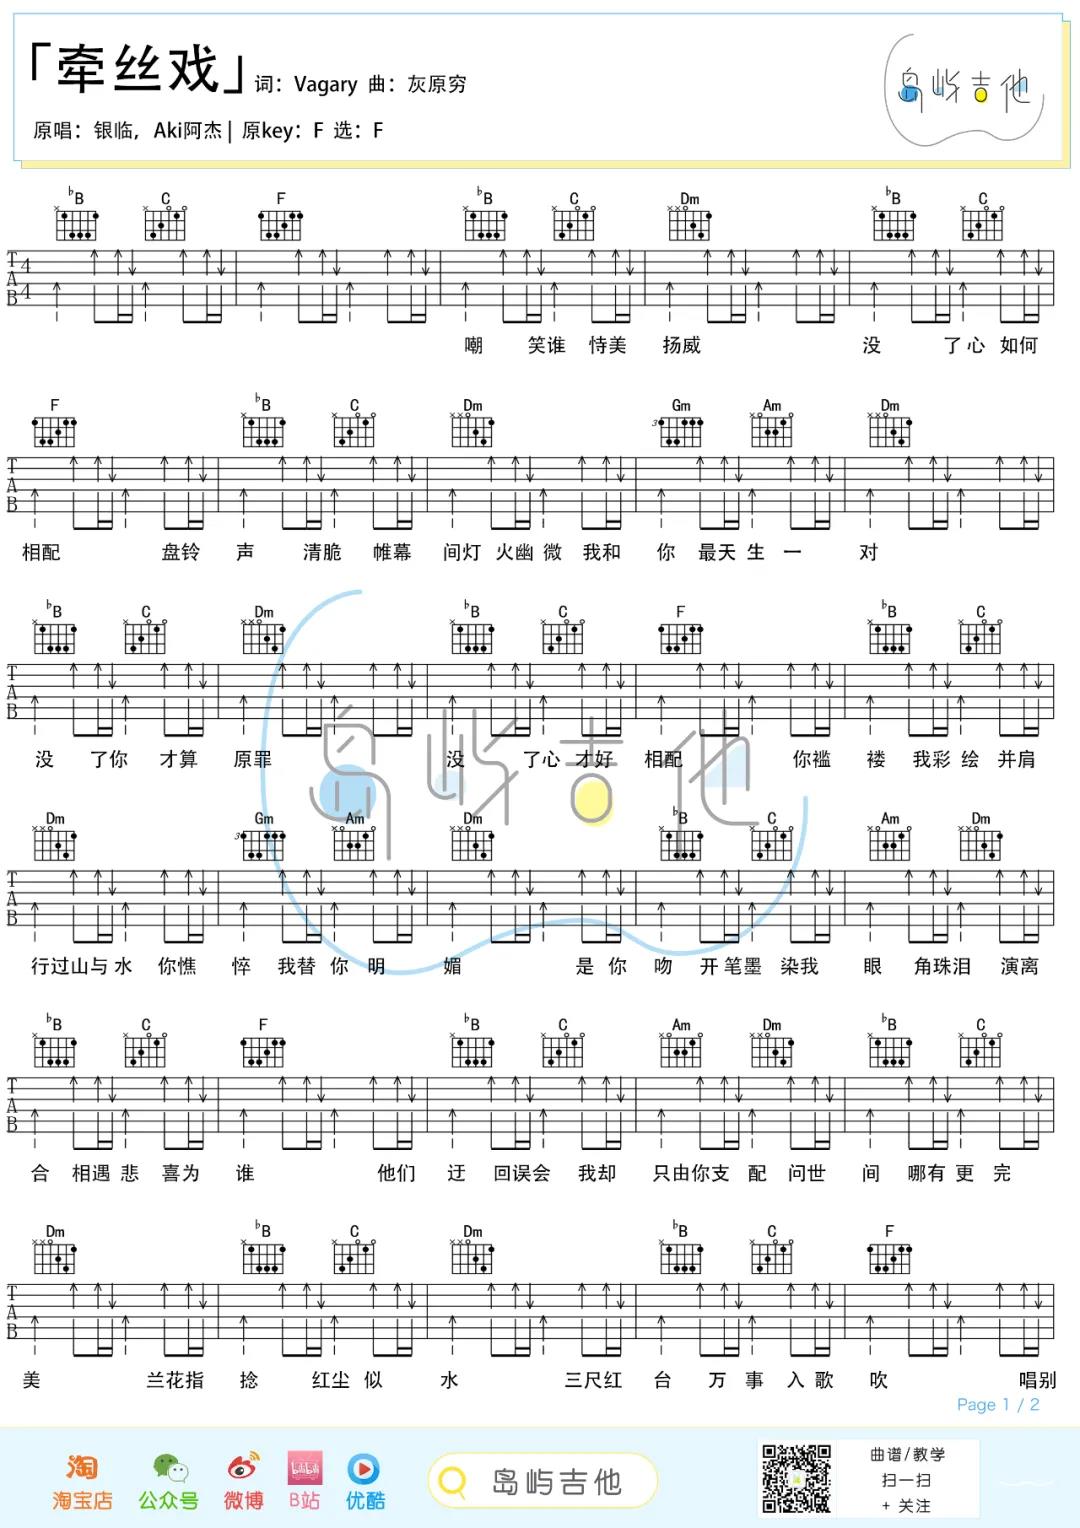 银临,Aki阿杰《牵丝戏》吉他谱(F调)-Guitar Music Score